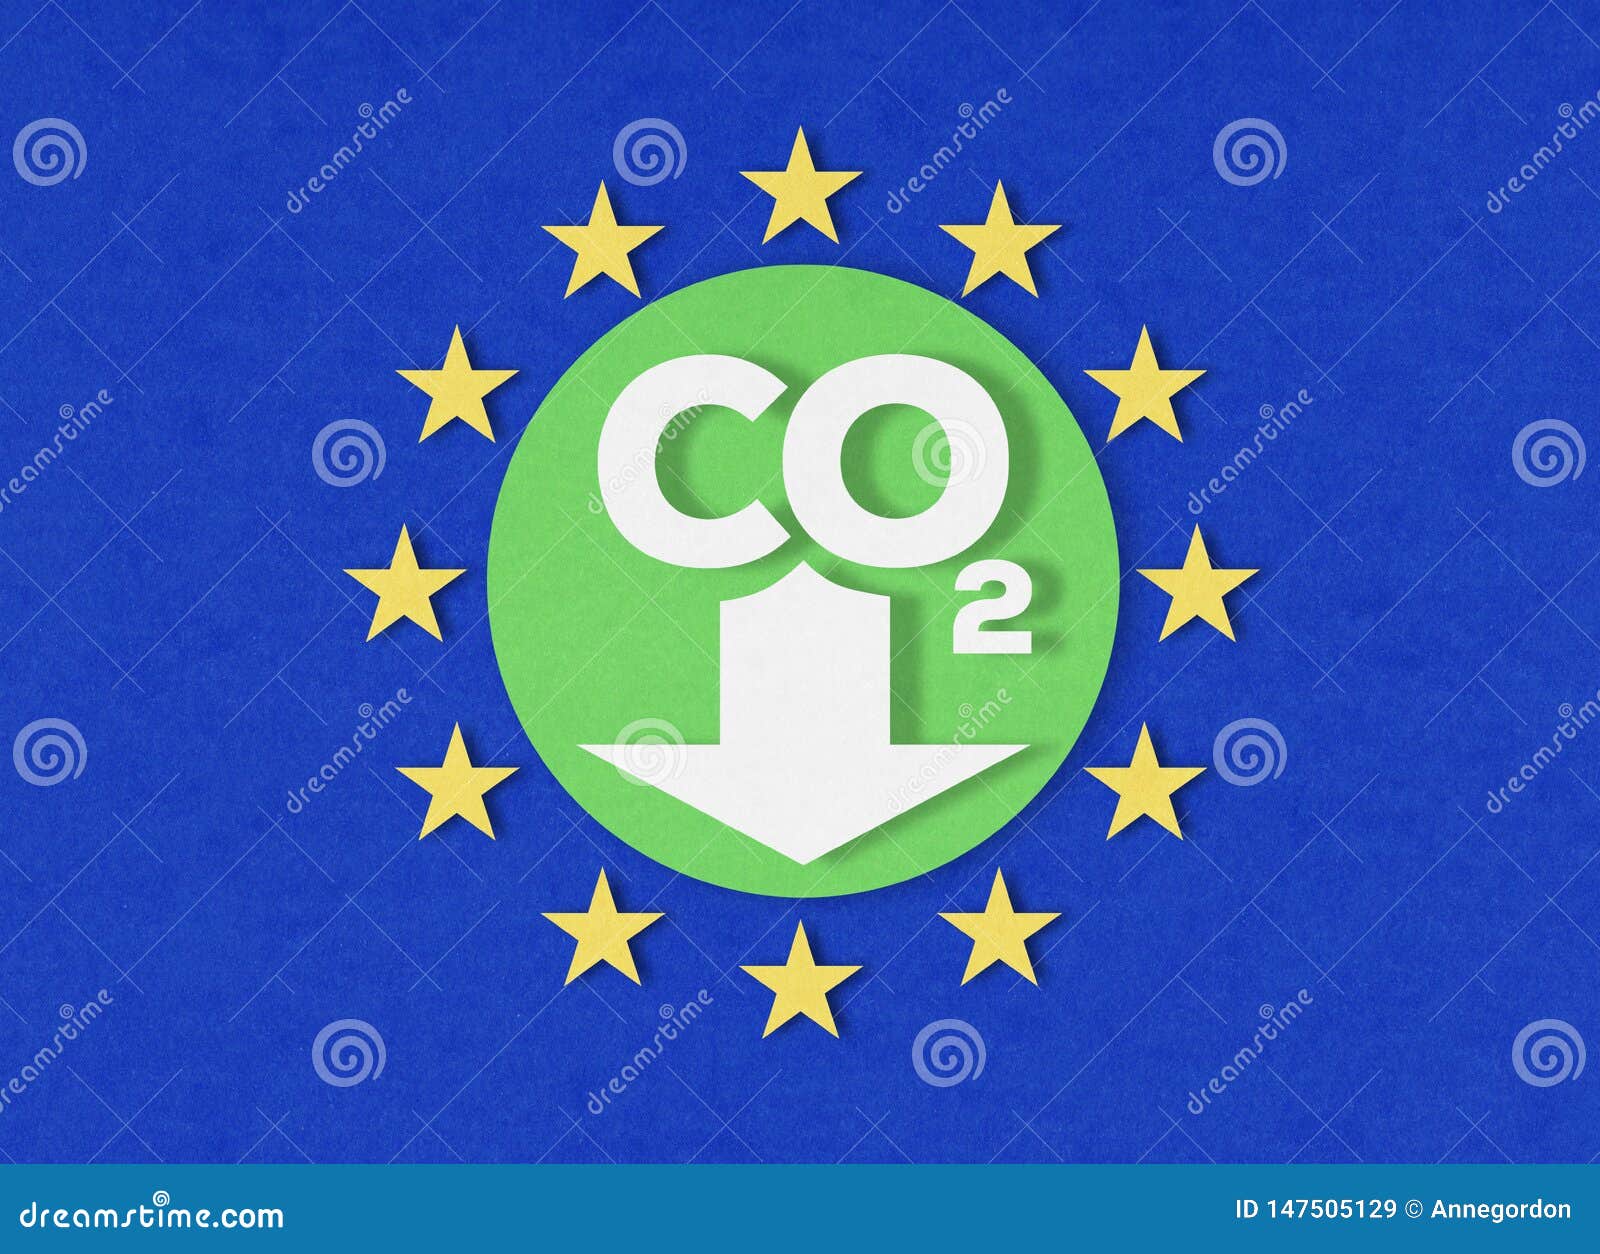 European Union climate action